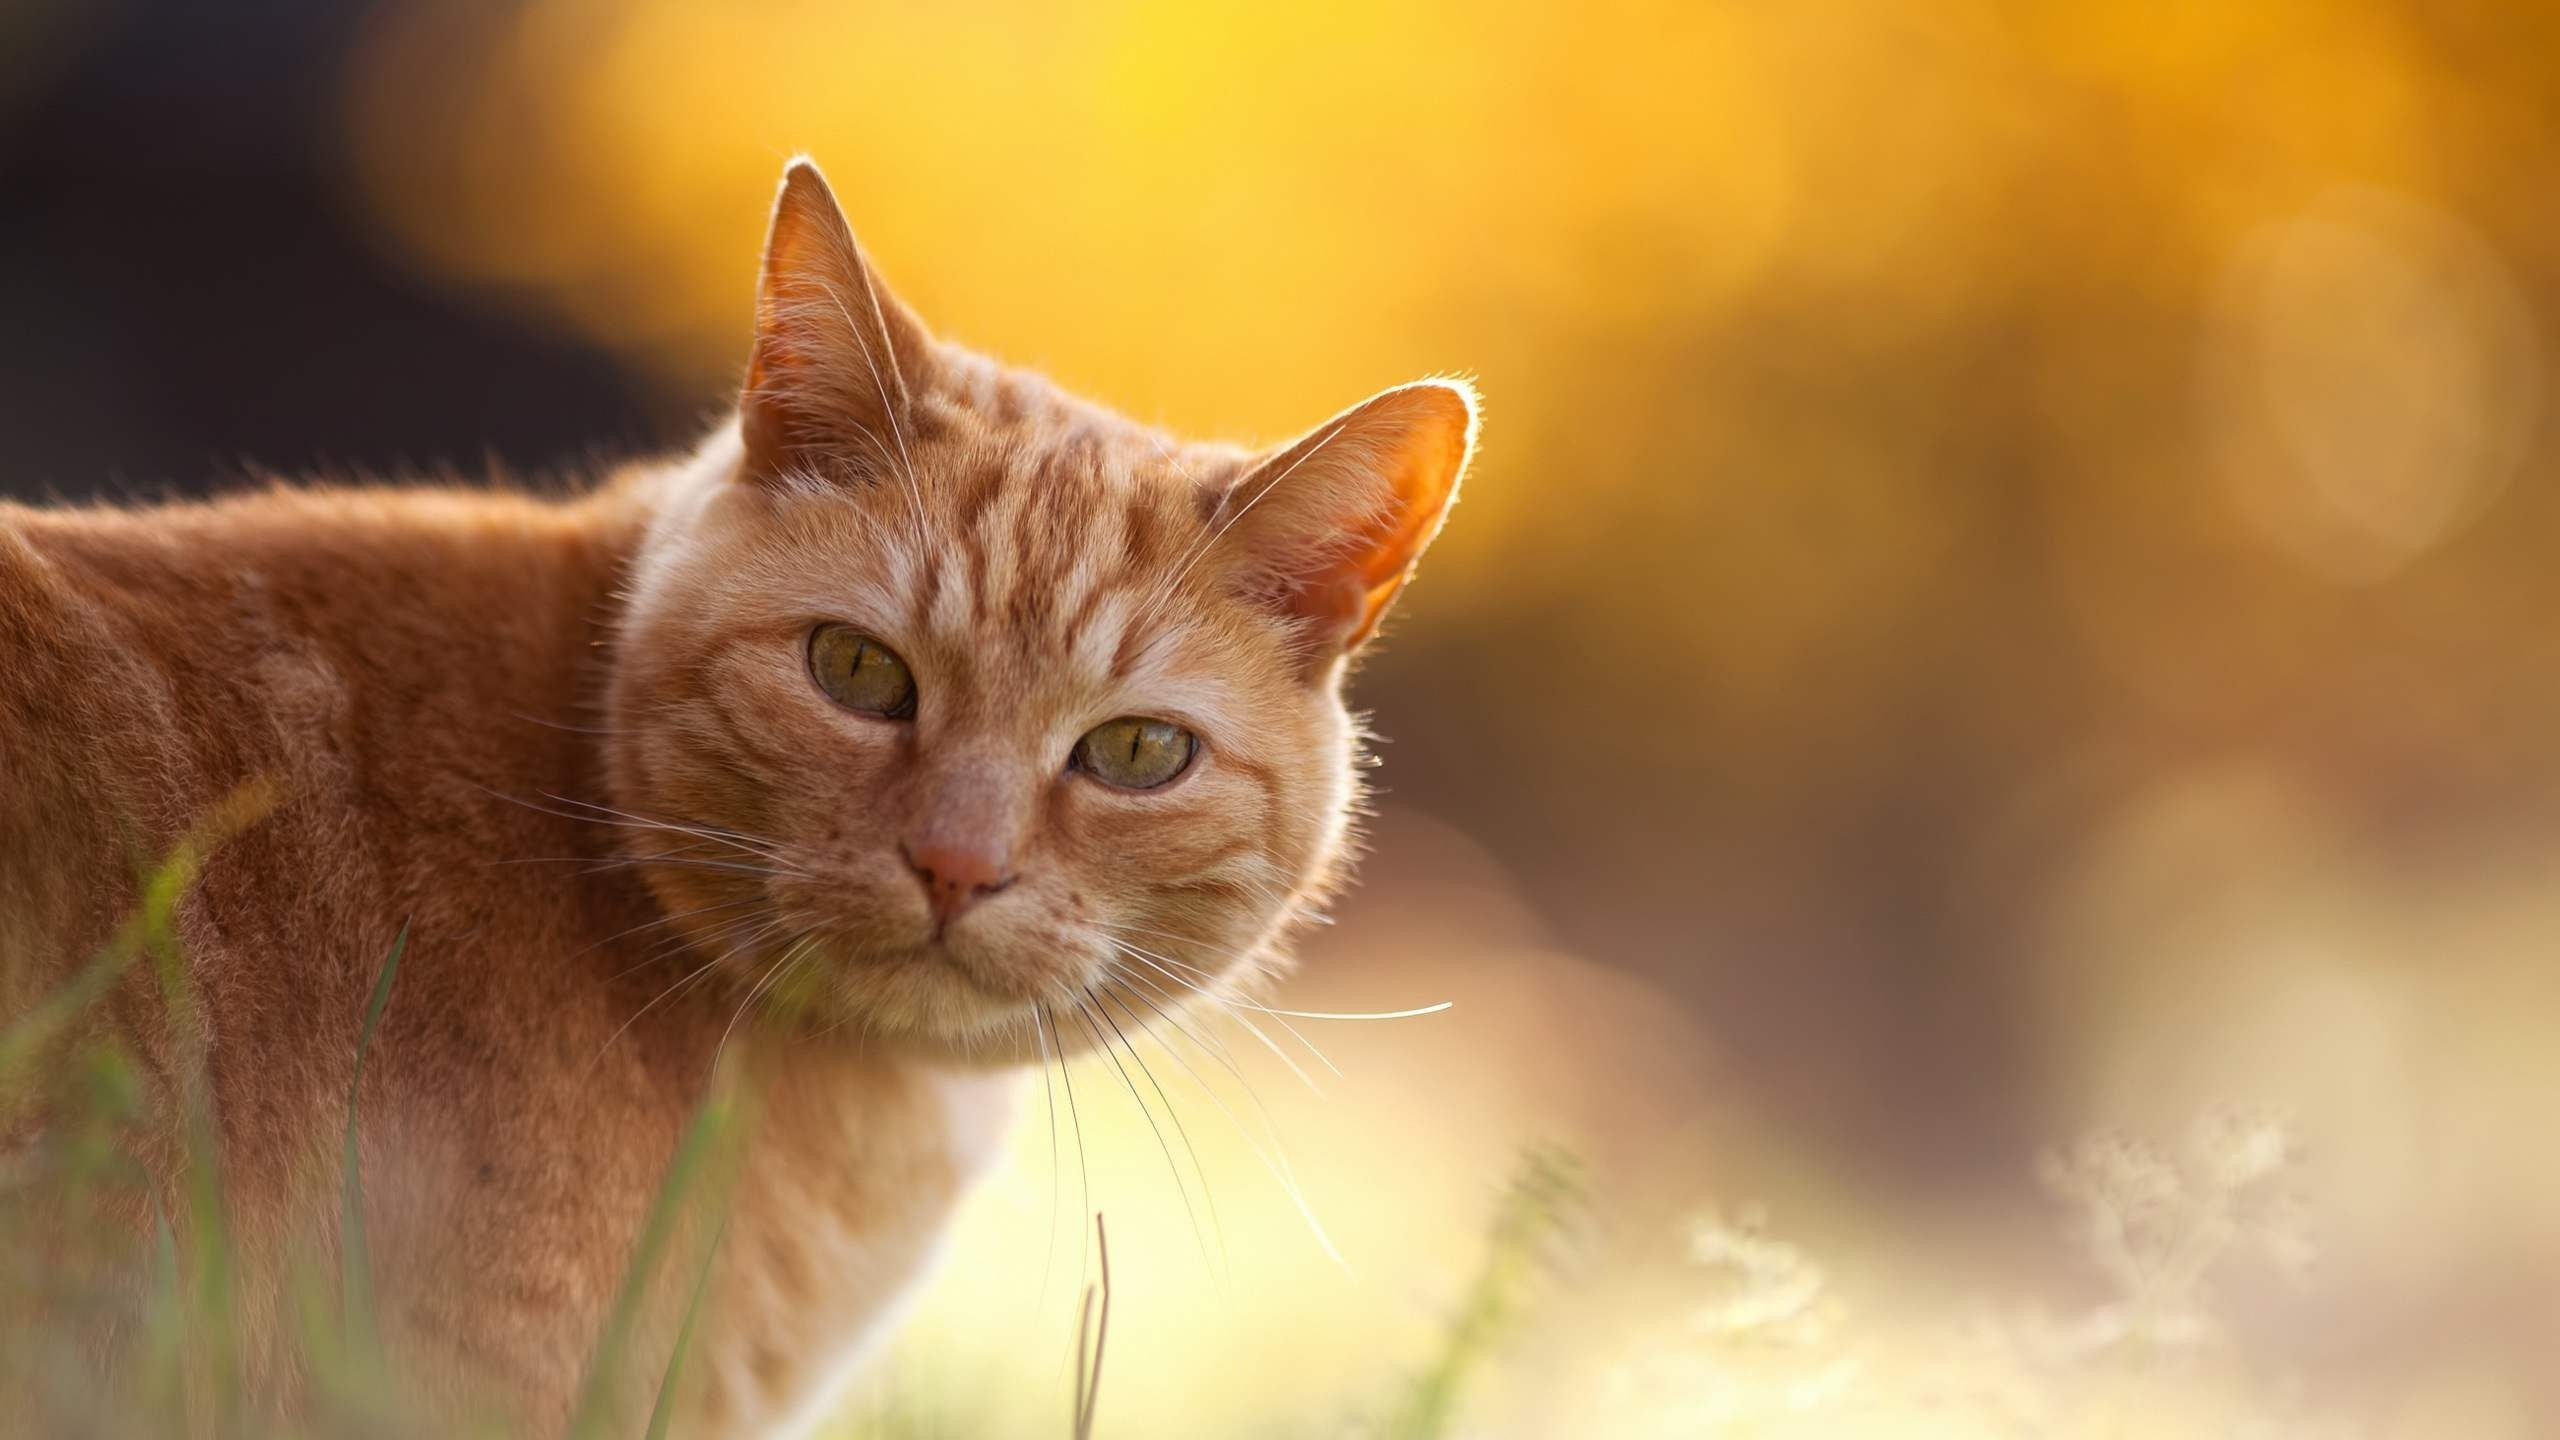 Orange Getigerte Katze Auf Grünem Gras Tagsüber. Wallpaper in 2560x1440 Resolution